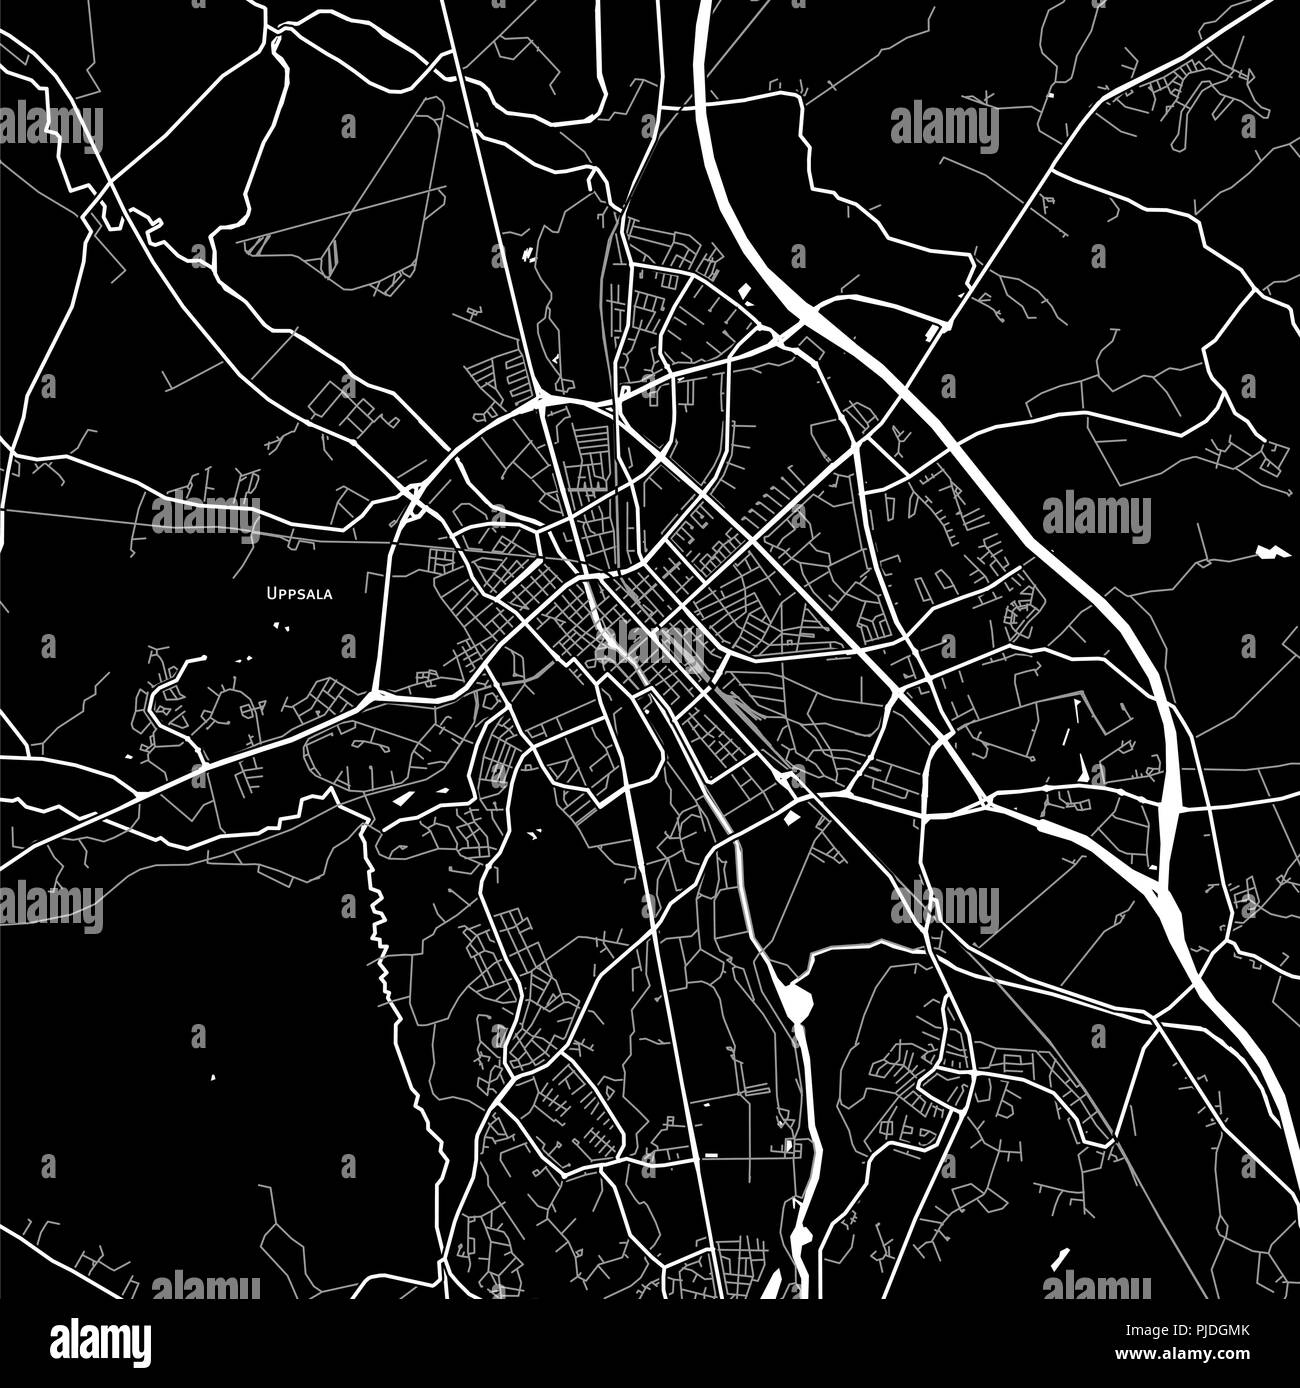 Mappa Area di Uppsala, Svezia. Sfondo scuro versione per una infografica e progetti di marketing. Illustrazione Vettoriale